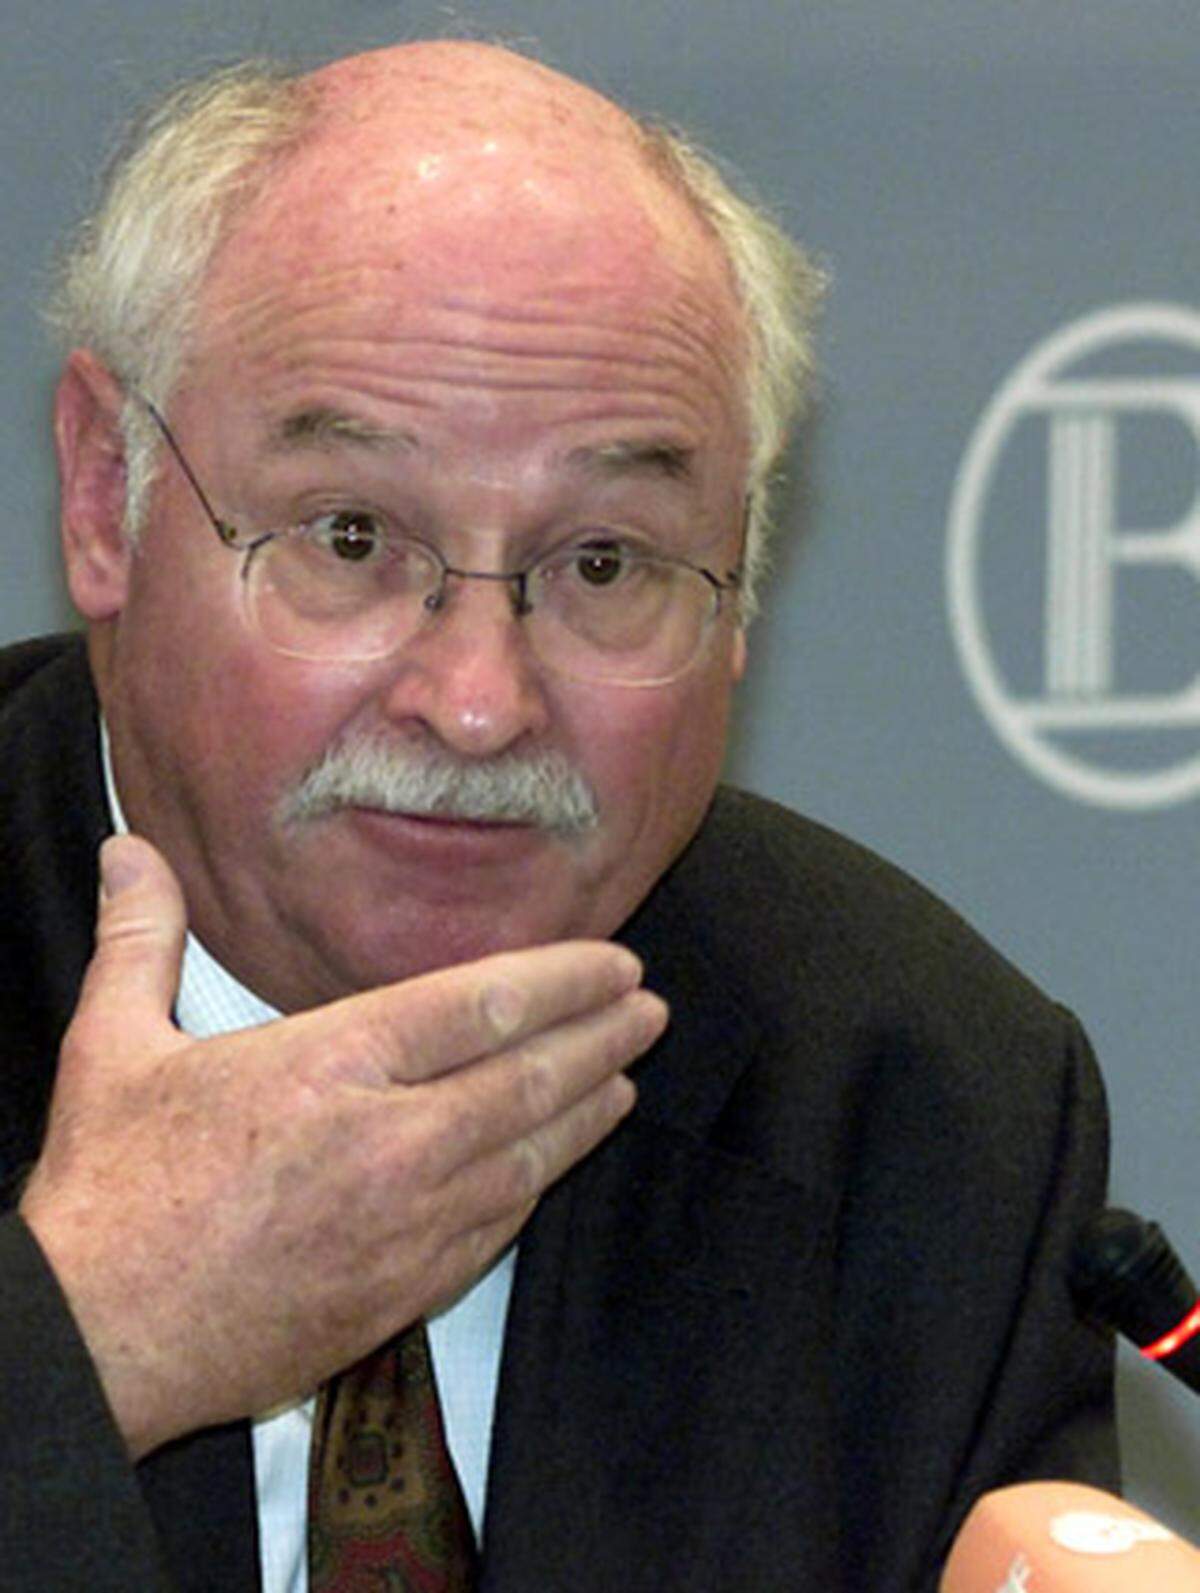 Der ehemalige Chef-Volkswirt der Hypo-Vereinsbank Martin Hüfner, zitiert vom "Handelsblatt".